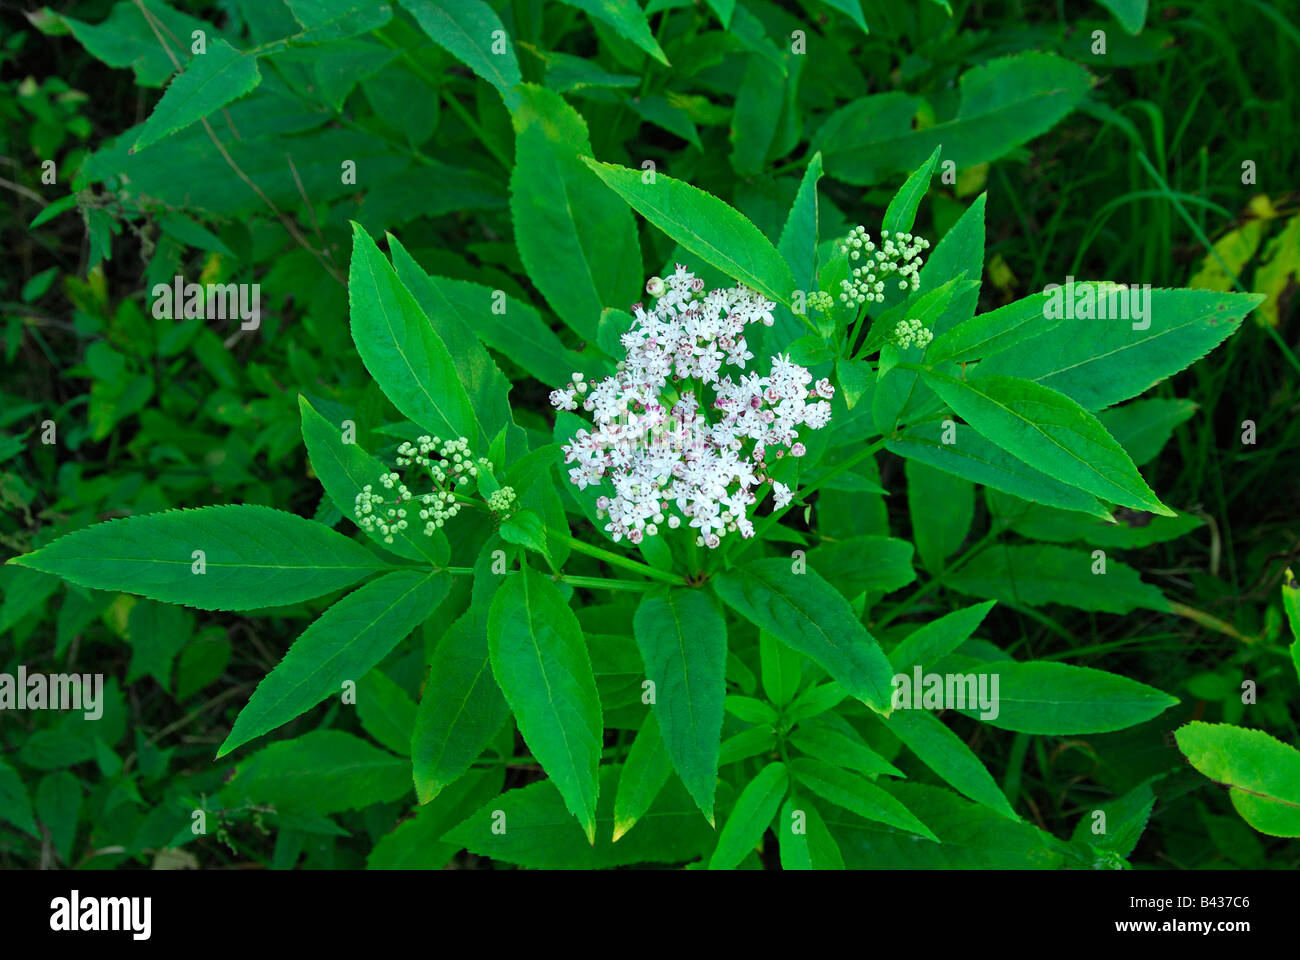 Danewort, Zwerg Elder, Europäische Zwerg Holunder, Walewort (Sambucus Ebulus) Blüte Stockfoto